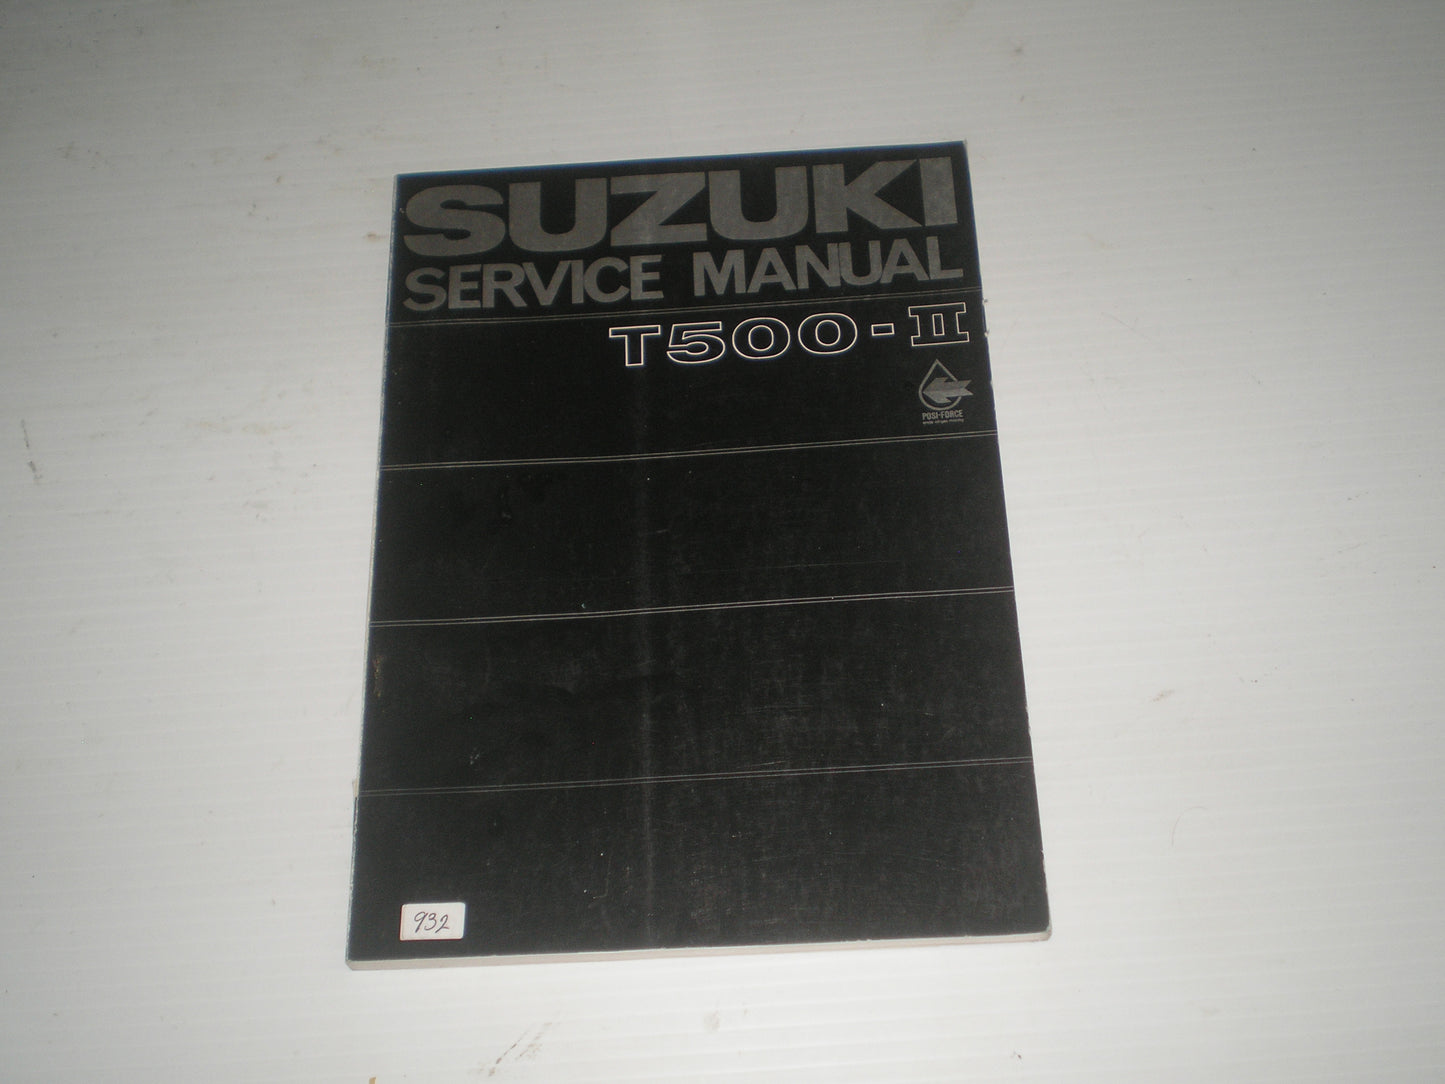 SUZUKI T500 -II  T500-II  T500-2  1969  Service Manual  SR-1500  #932